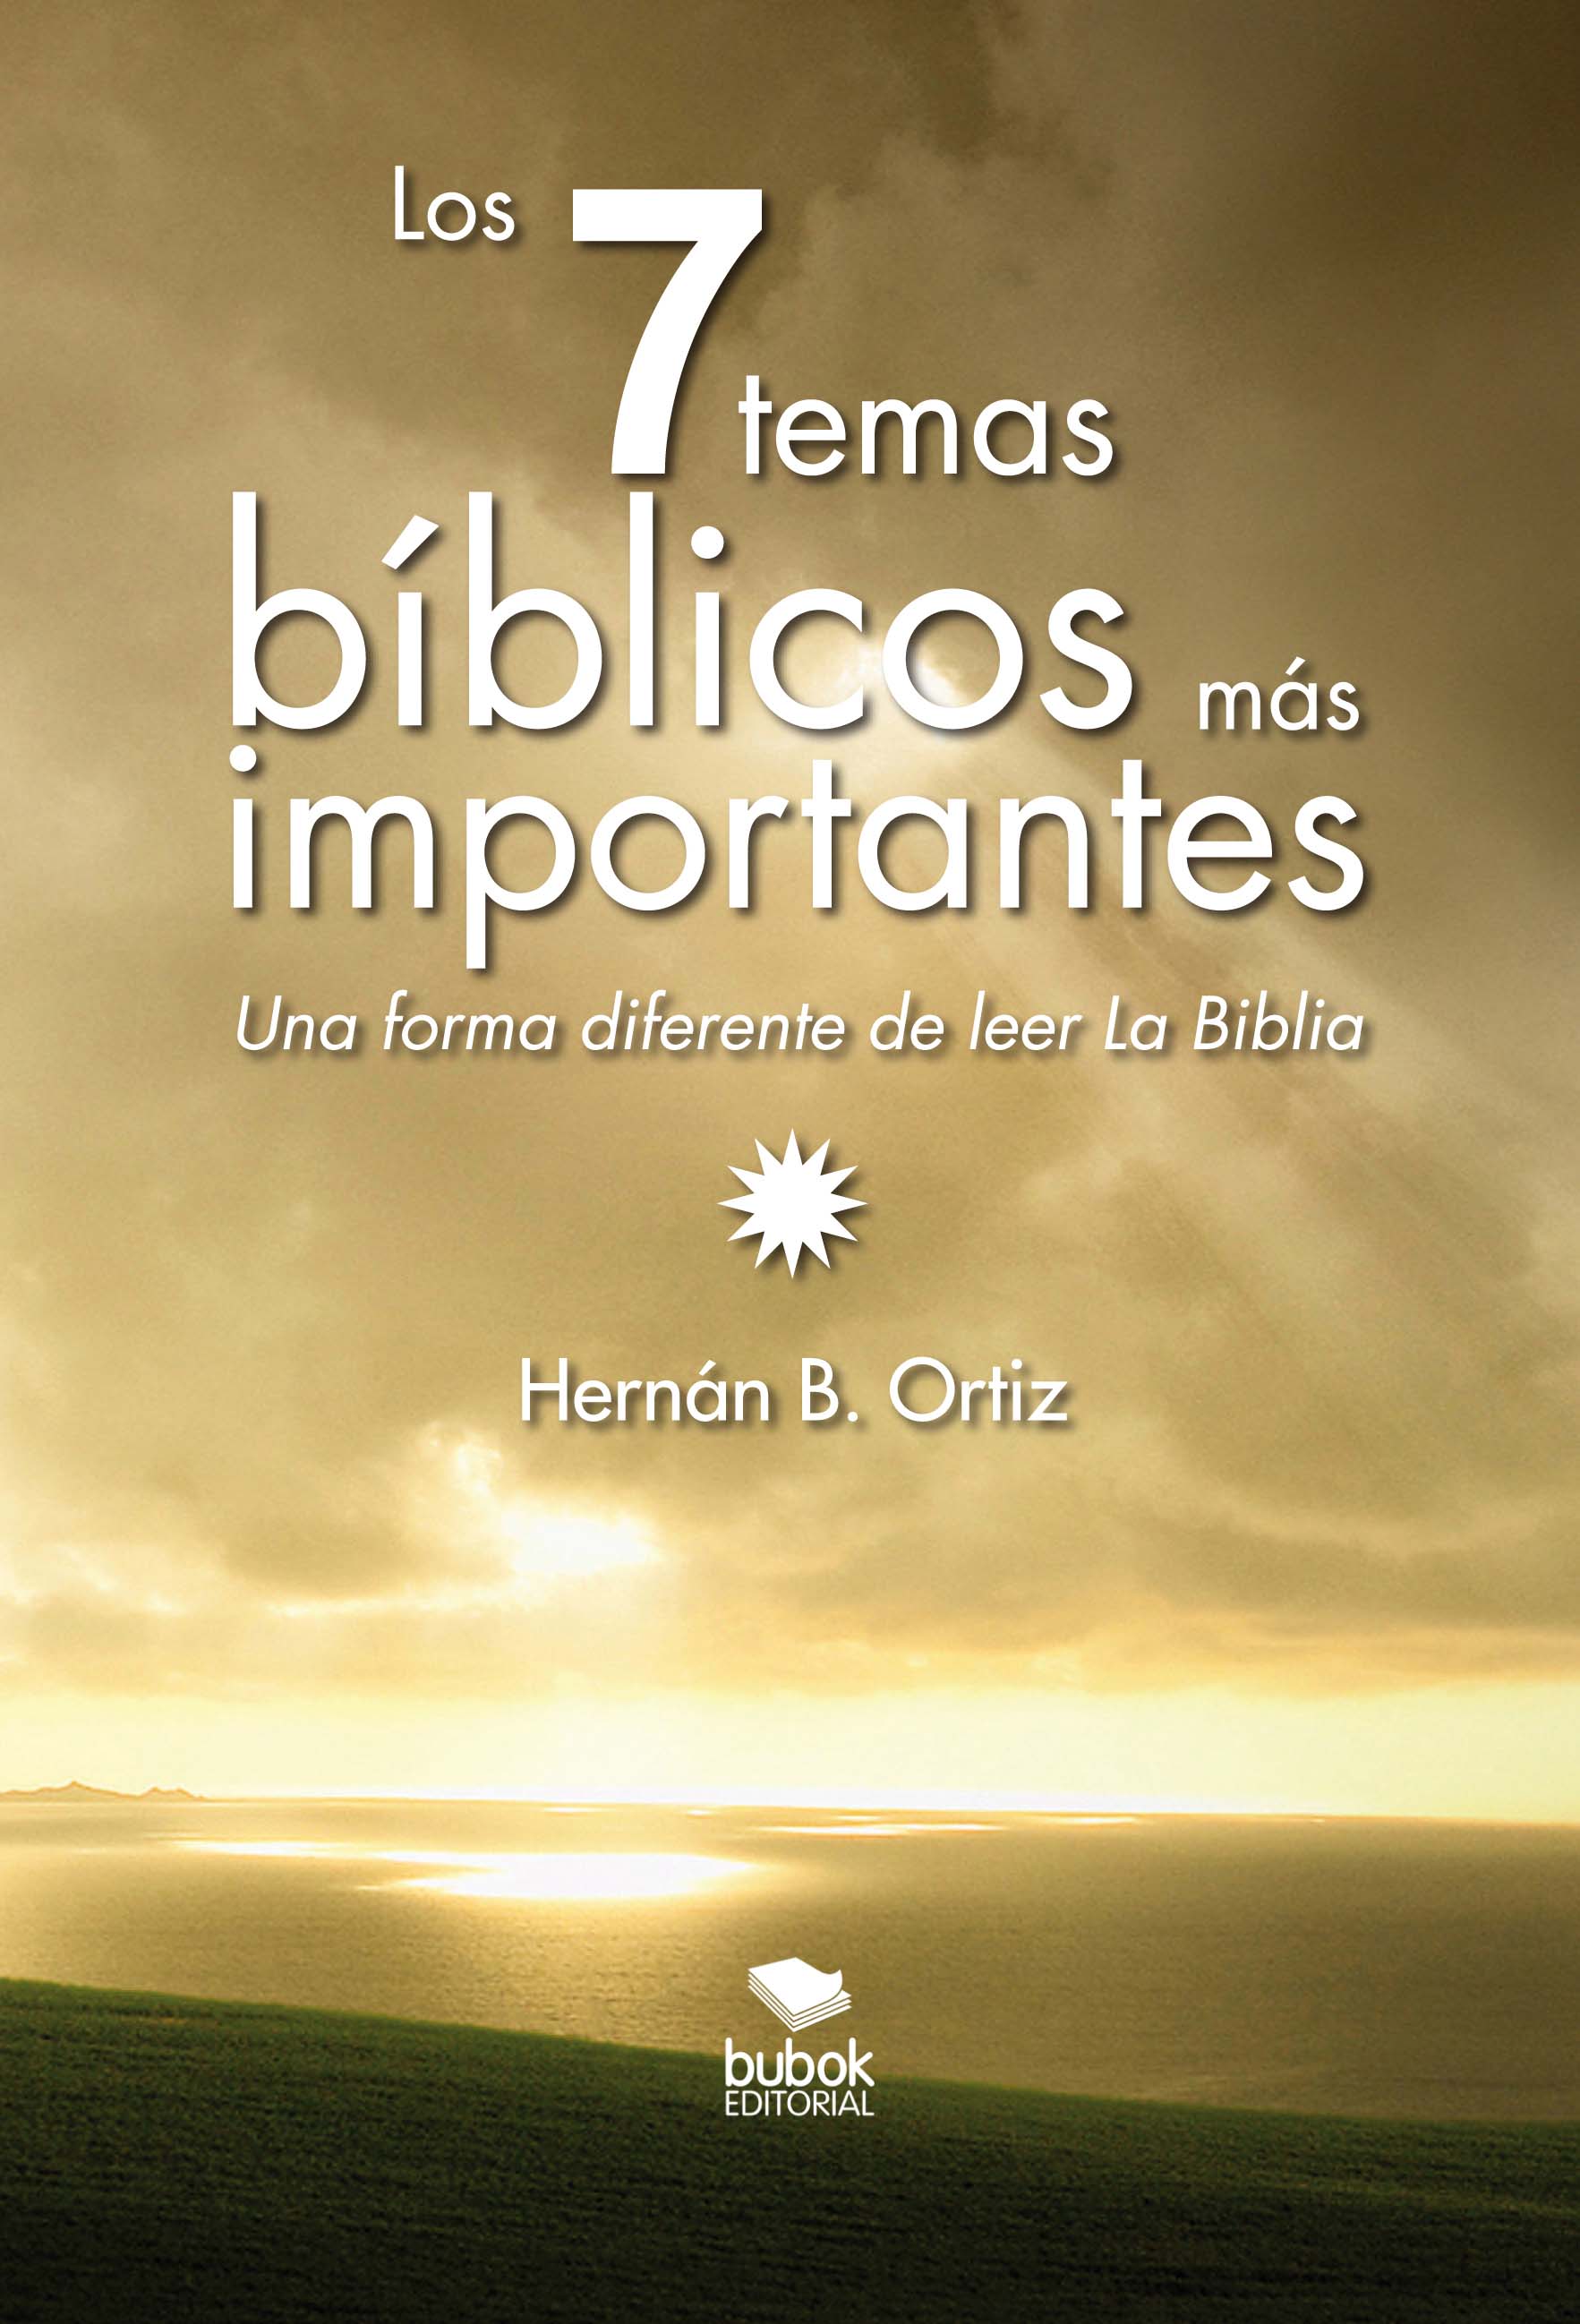 (Los siete temas bíblicos más importantes, 2014)